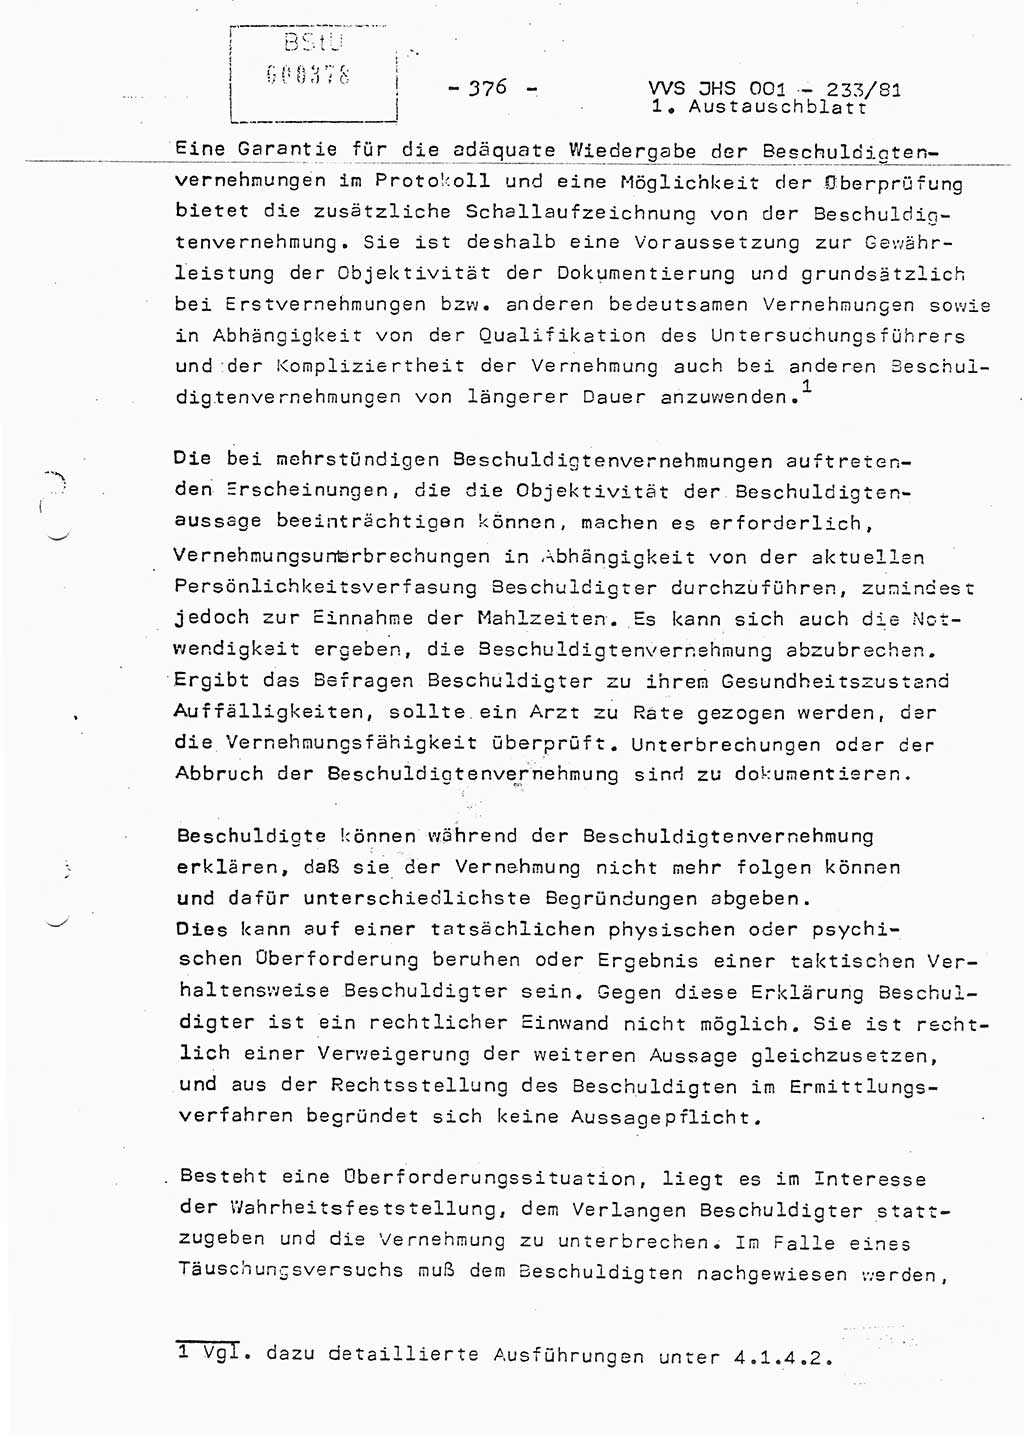 Dissertation Oberstleutnant Horst Zank (JHS), Oberstleutnant Dr. Karl-Heinz Knoblauch (JHS), Oberstleutnant Gustav-Adolf Kowalewski (HA Ⅸ), Oberstleutnant Wolfgang Plötner (HA Ⅸ), Ministerium für Staatssicherheit (MfS) [Deutsche Demokratische Republik (DDR)], Juristische Hochschule (JHS), Vertrauliche Verschlußsache (VVS) o001-233/81, Potsdam 1981, Blatt 376 (Diss. MfS DDR JHS VVS o001-233/81 1981, Bl. 376)